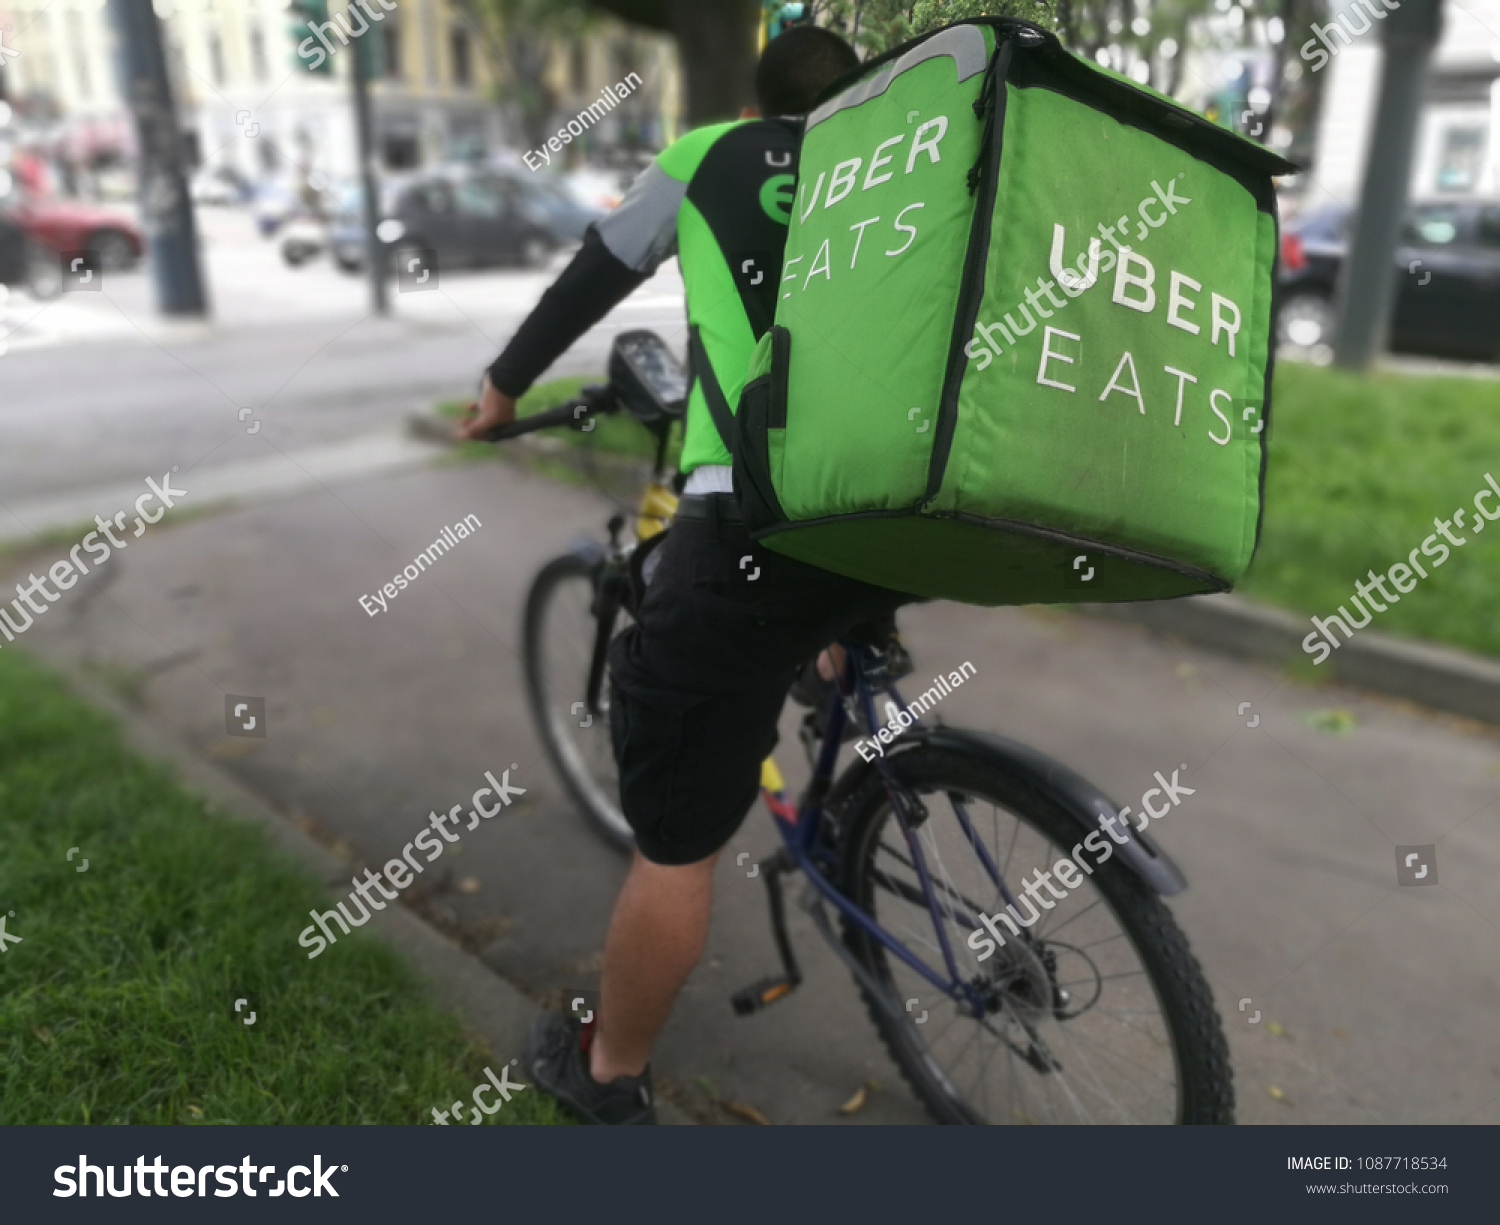 uber eats bicycle account